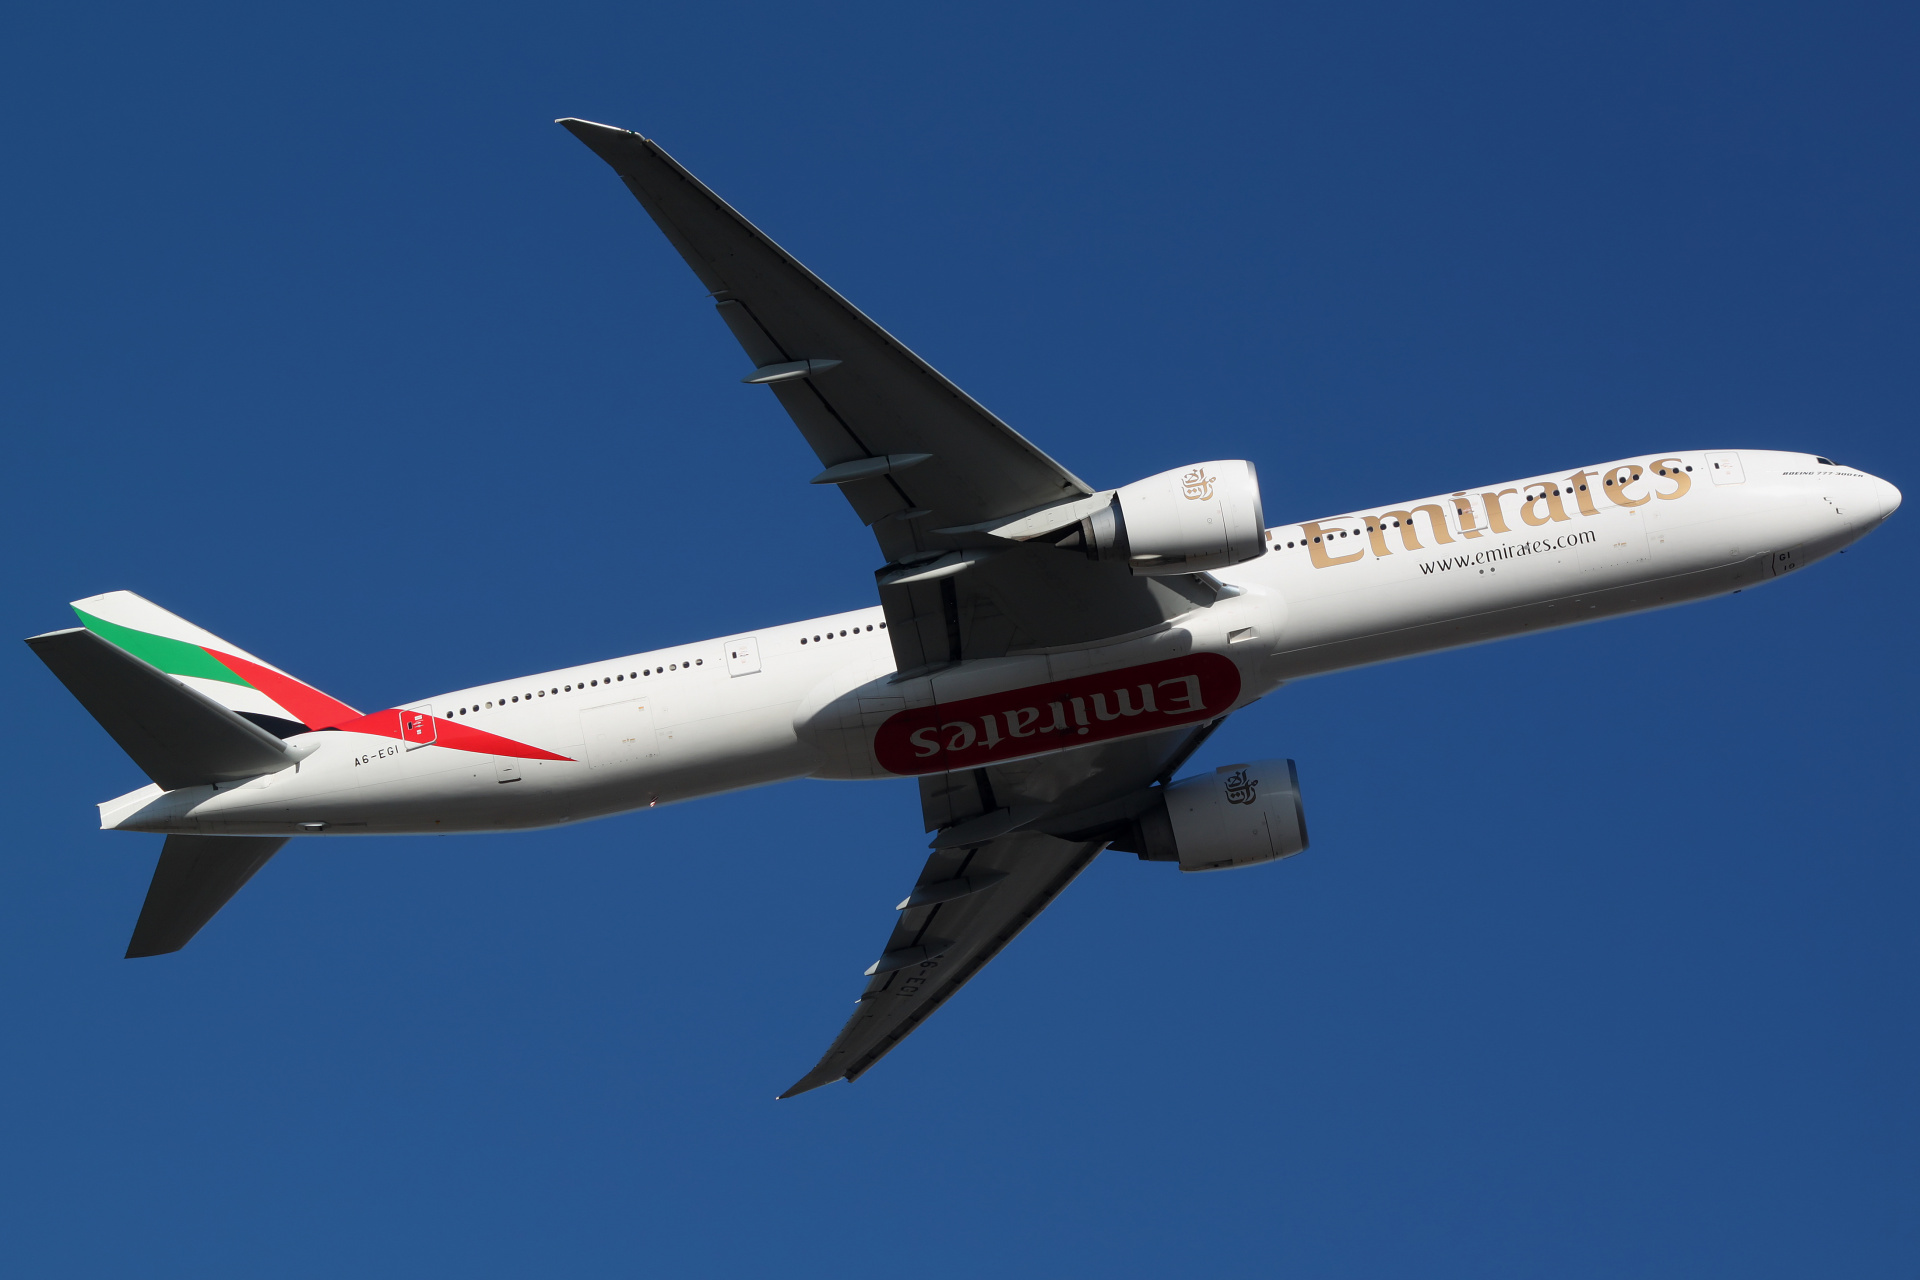 A6-EGI (Aircraft » EPWA Spotting » Boeing 777-300ER » Emirates)